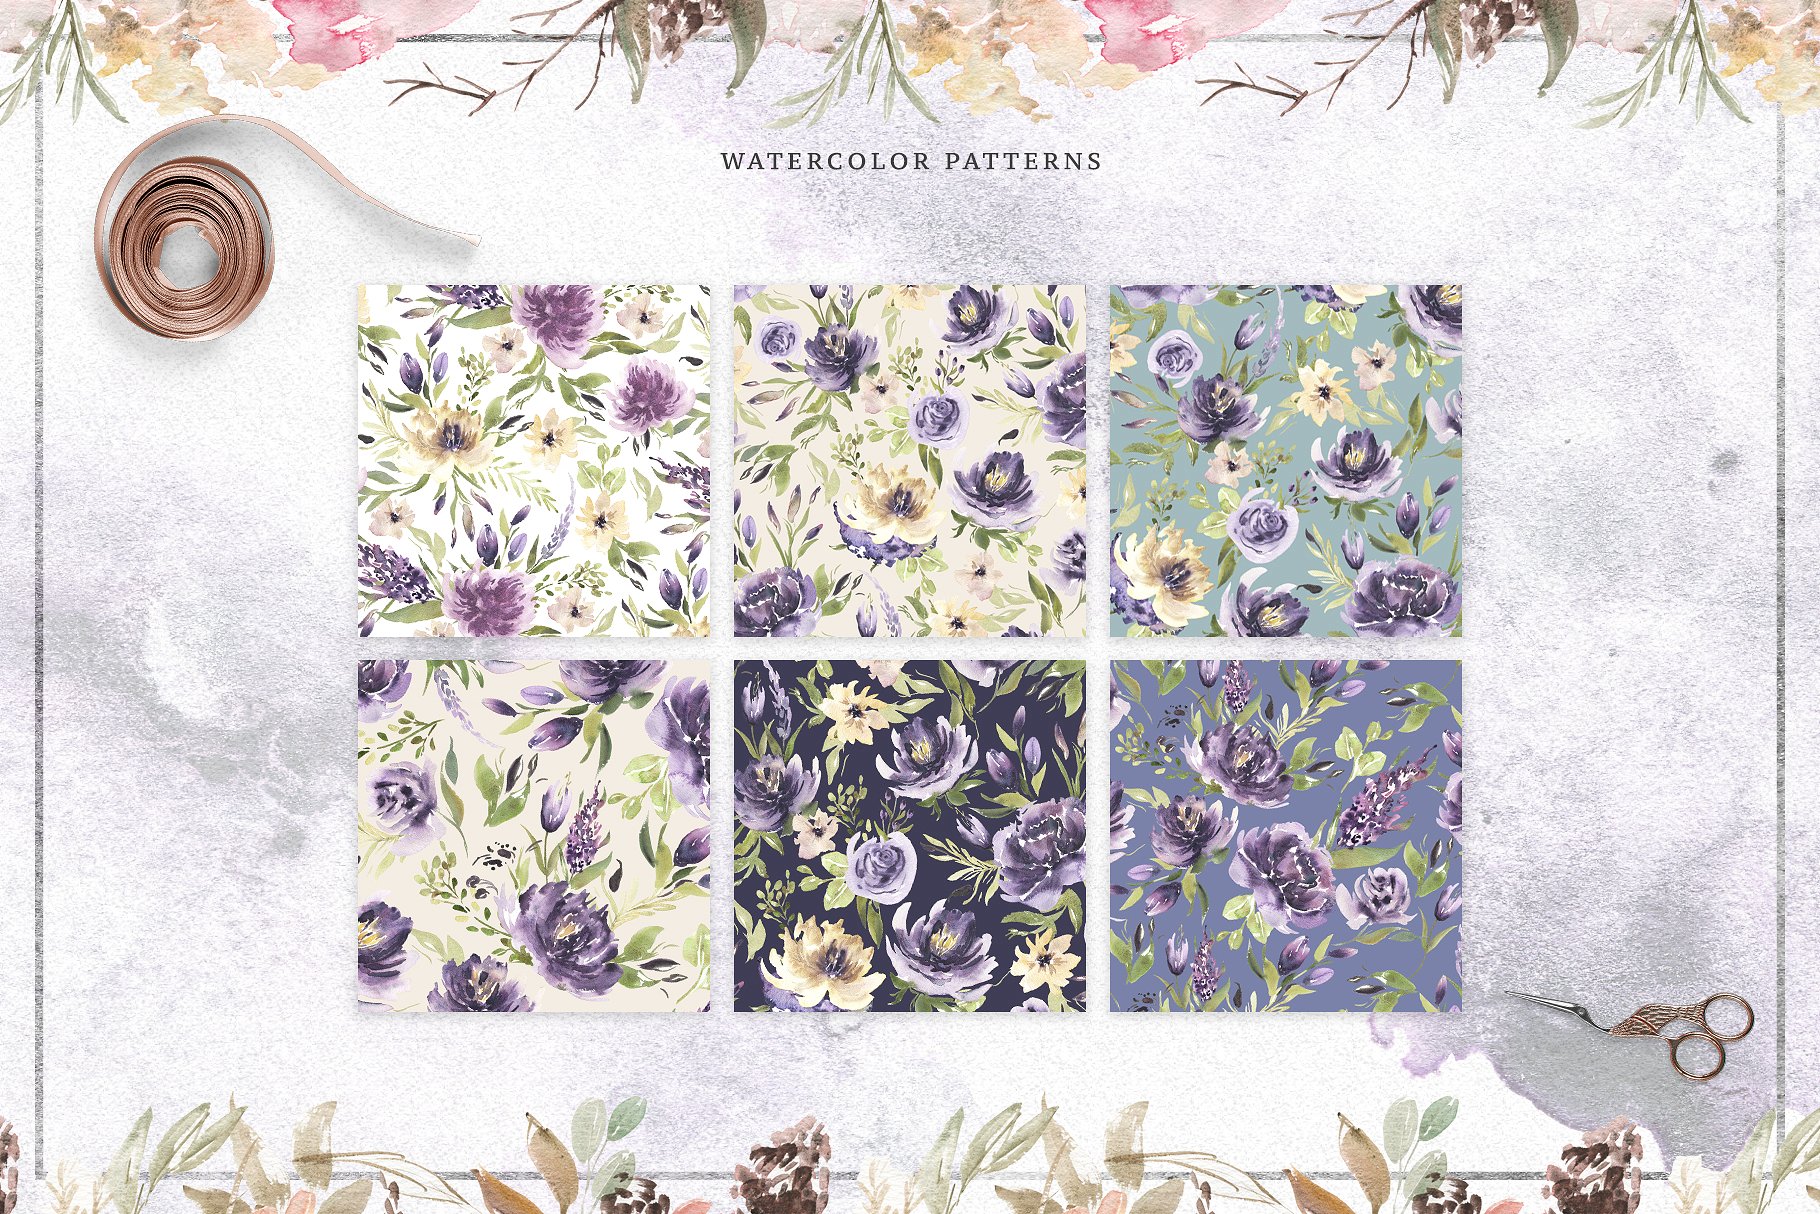 极力推荐：花卉图案纹理集合 Floral Patterns Bundle Vol.2 [3.45GB, 超过120款图案]插图(4)